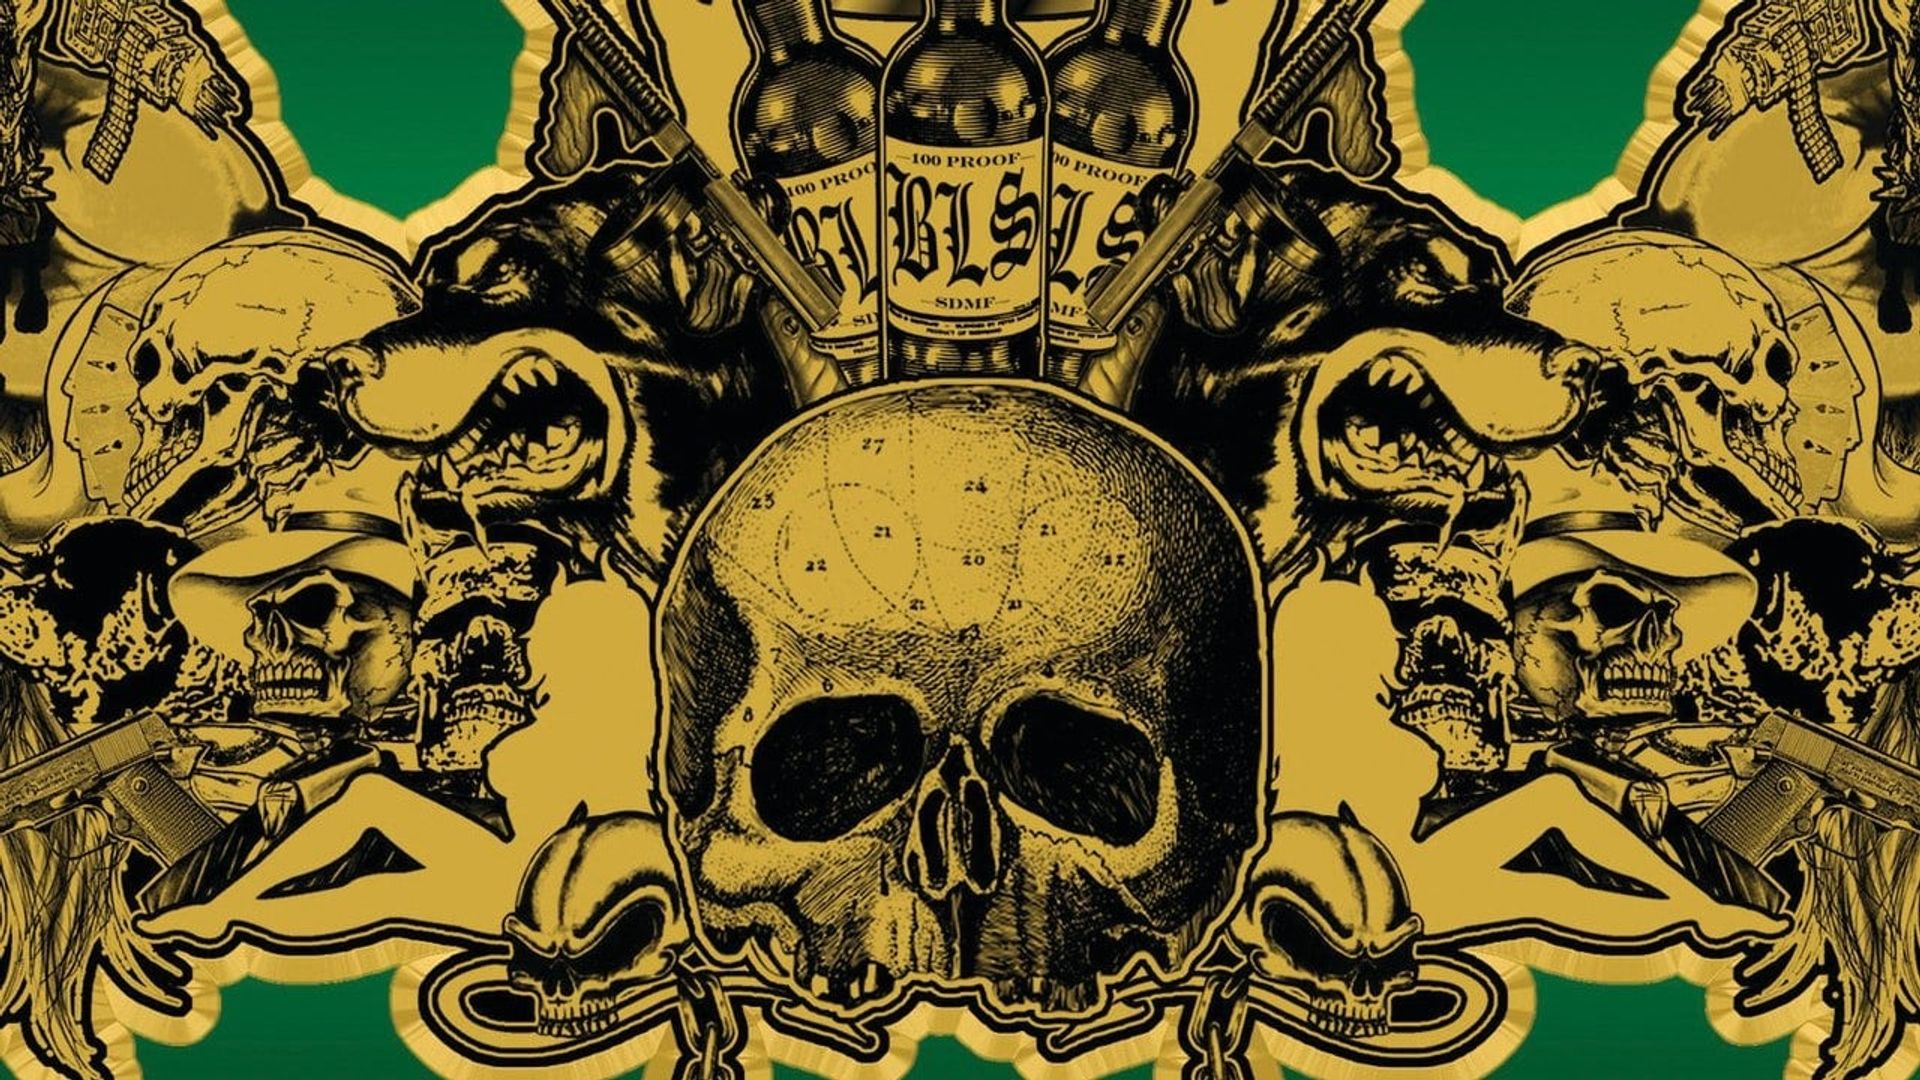 Black Label Society: Skullage background